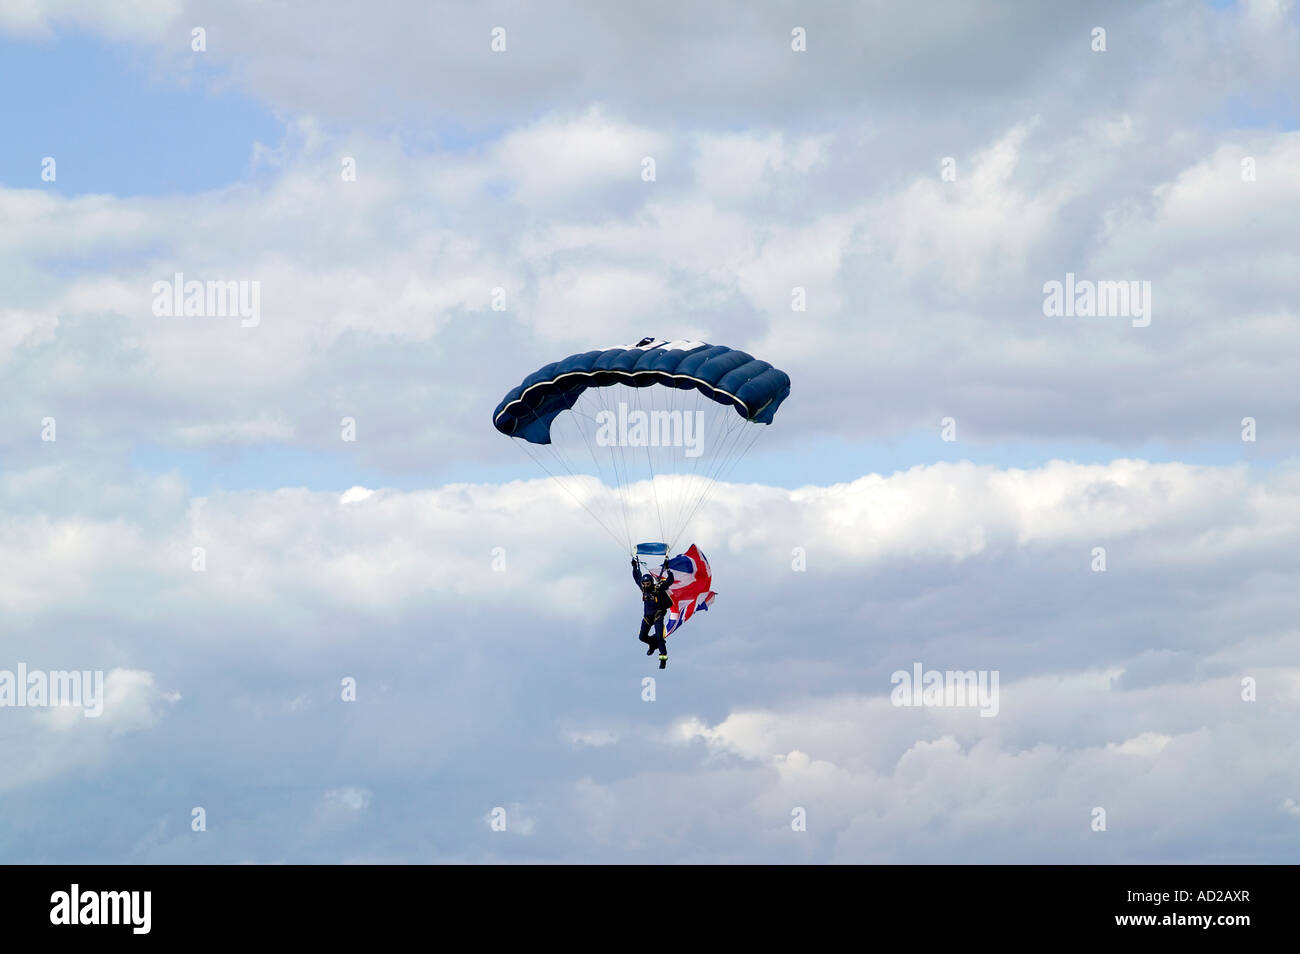 Parachutist with a Union Jack flag against a blue cloudy sky Stock Photo